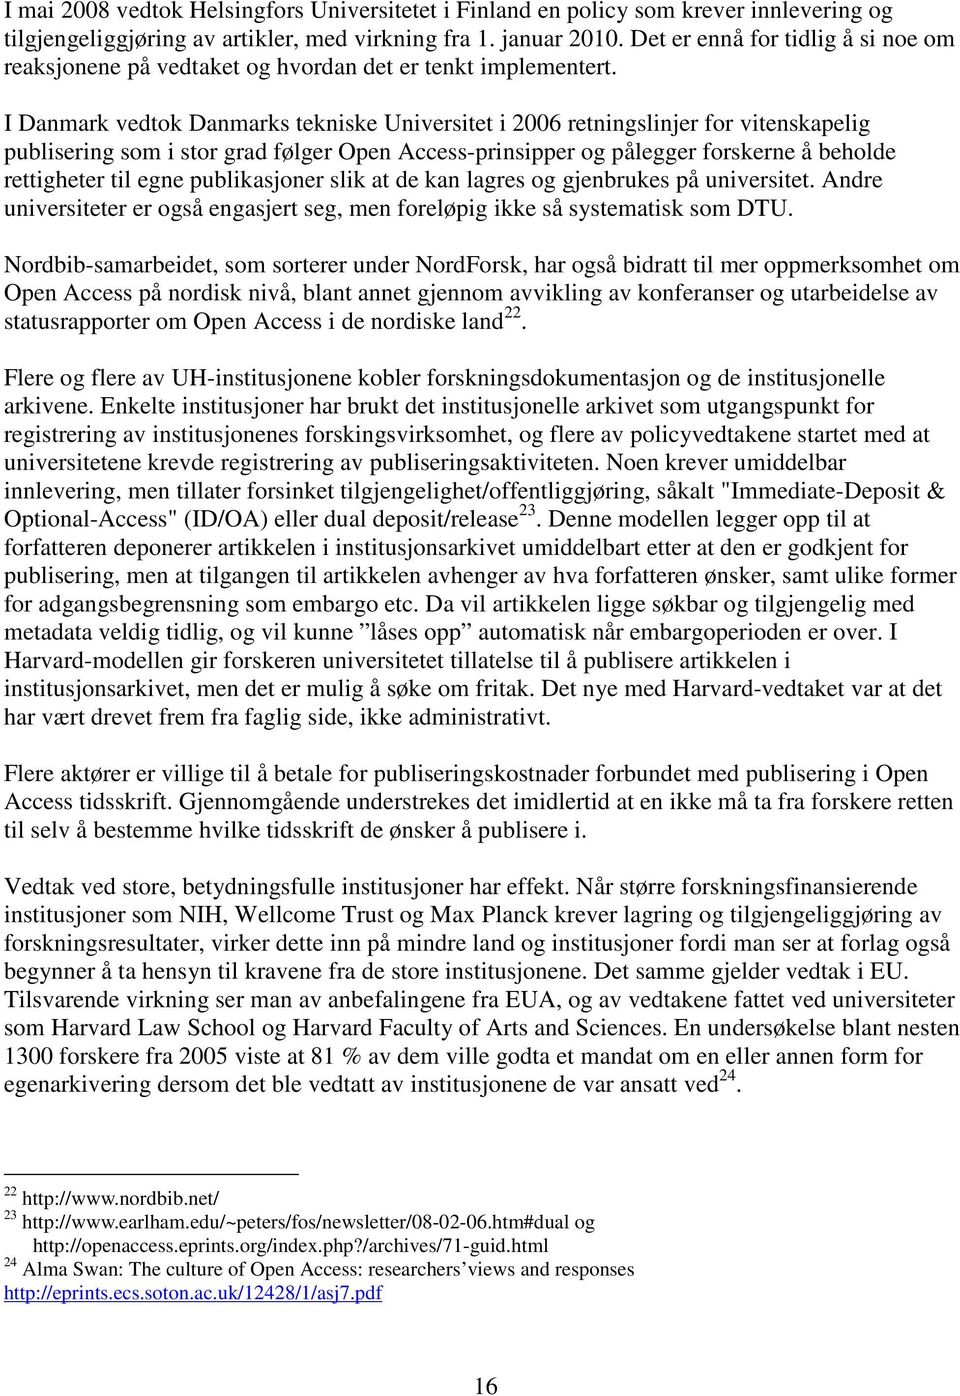 I Danmark vedtok Danmarks tekniske Universitet i 2006 retningslinjer for vitenskapelig publisering som i stor grad følger Open Access-prinsipper og pålegger forskerne å beholde rettigheter til egne